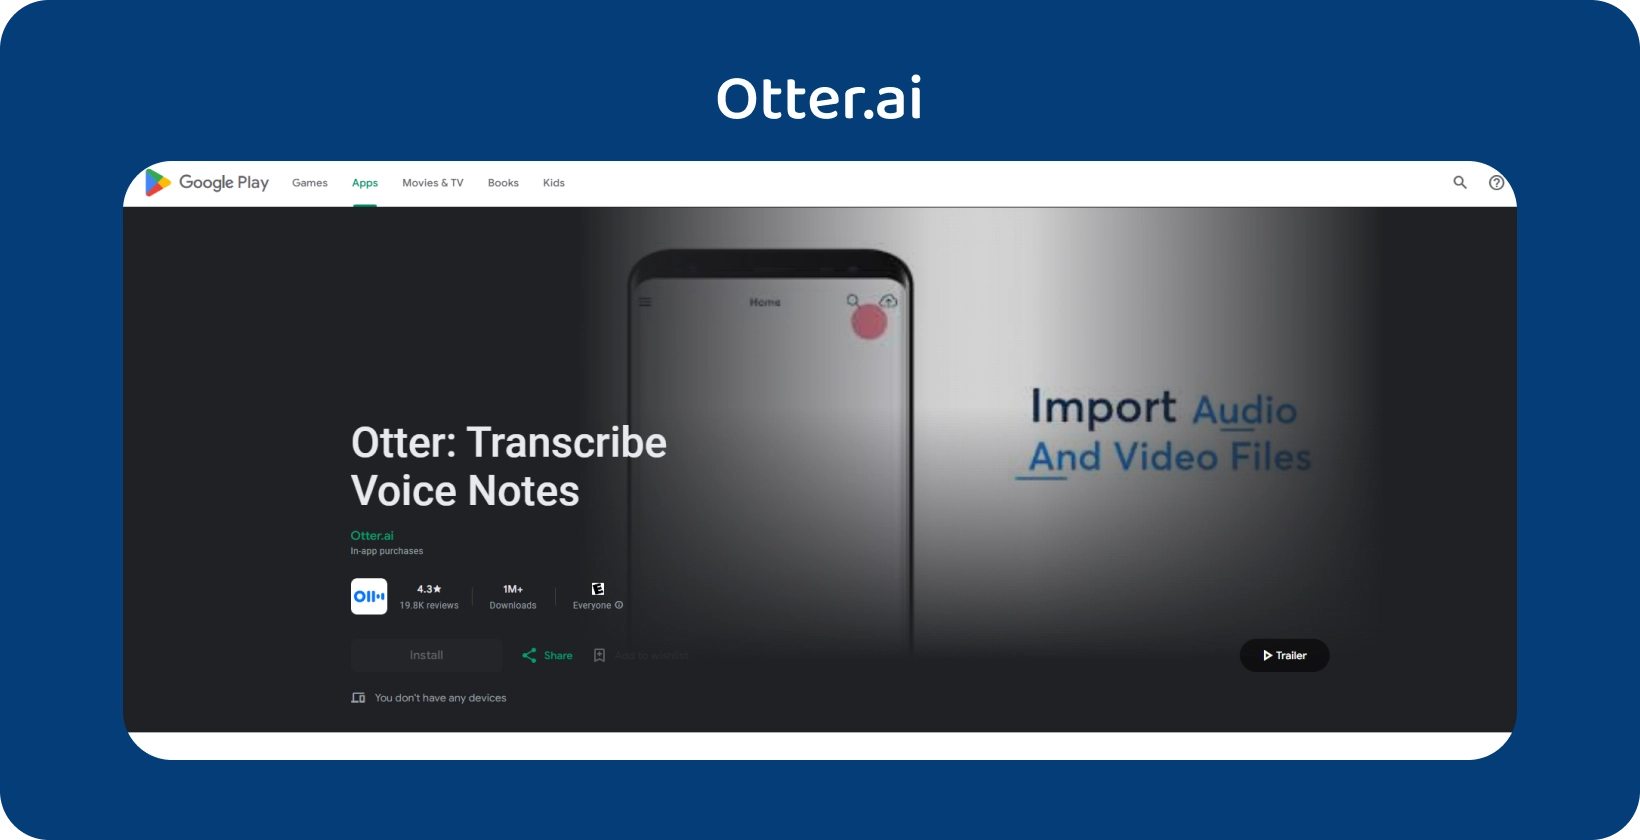 Aplikacja Otter.ai w Google Play, oferująca transkrypcję notatek głosowych i możliwość importowania plików audio / wideo.